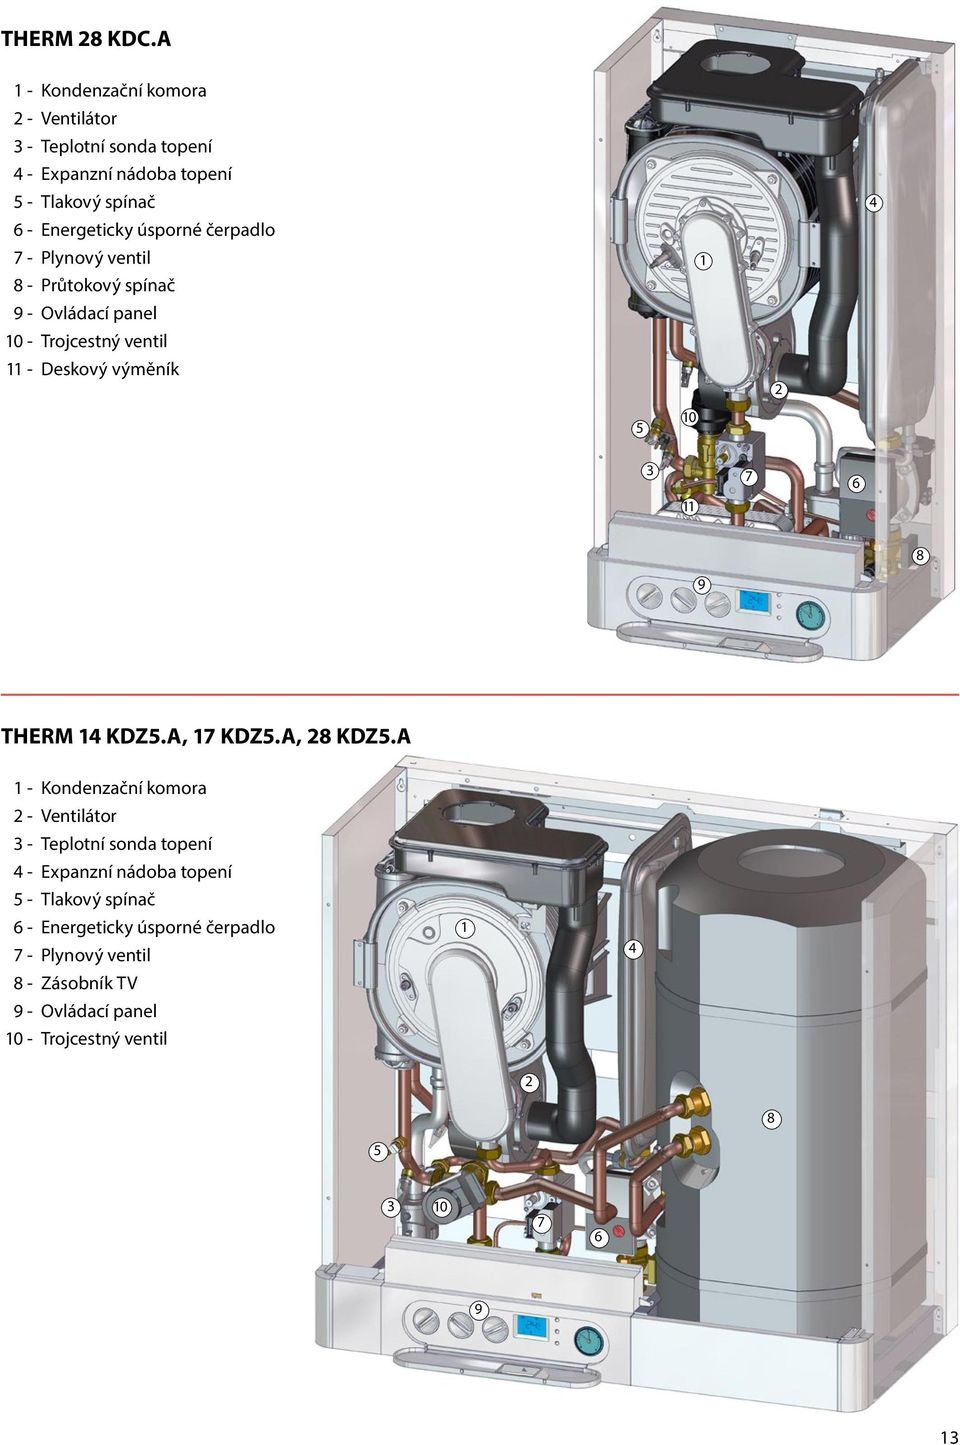 čerpadlo 7 - Plynový ventil 8 - Průtokový spínač 1 9 - Ovládací panel 10 - Trojcestný ventil 11 - Deskový výměník 2 5 10 3 7 6 11 8 9 THERM